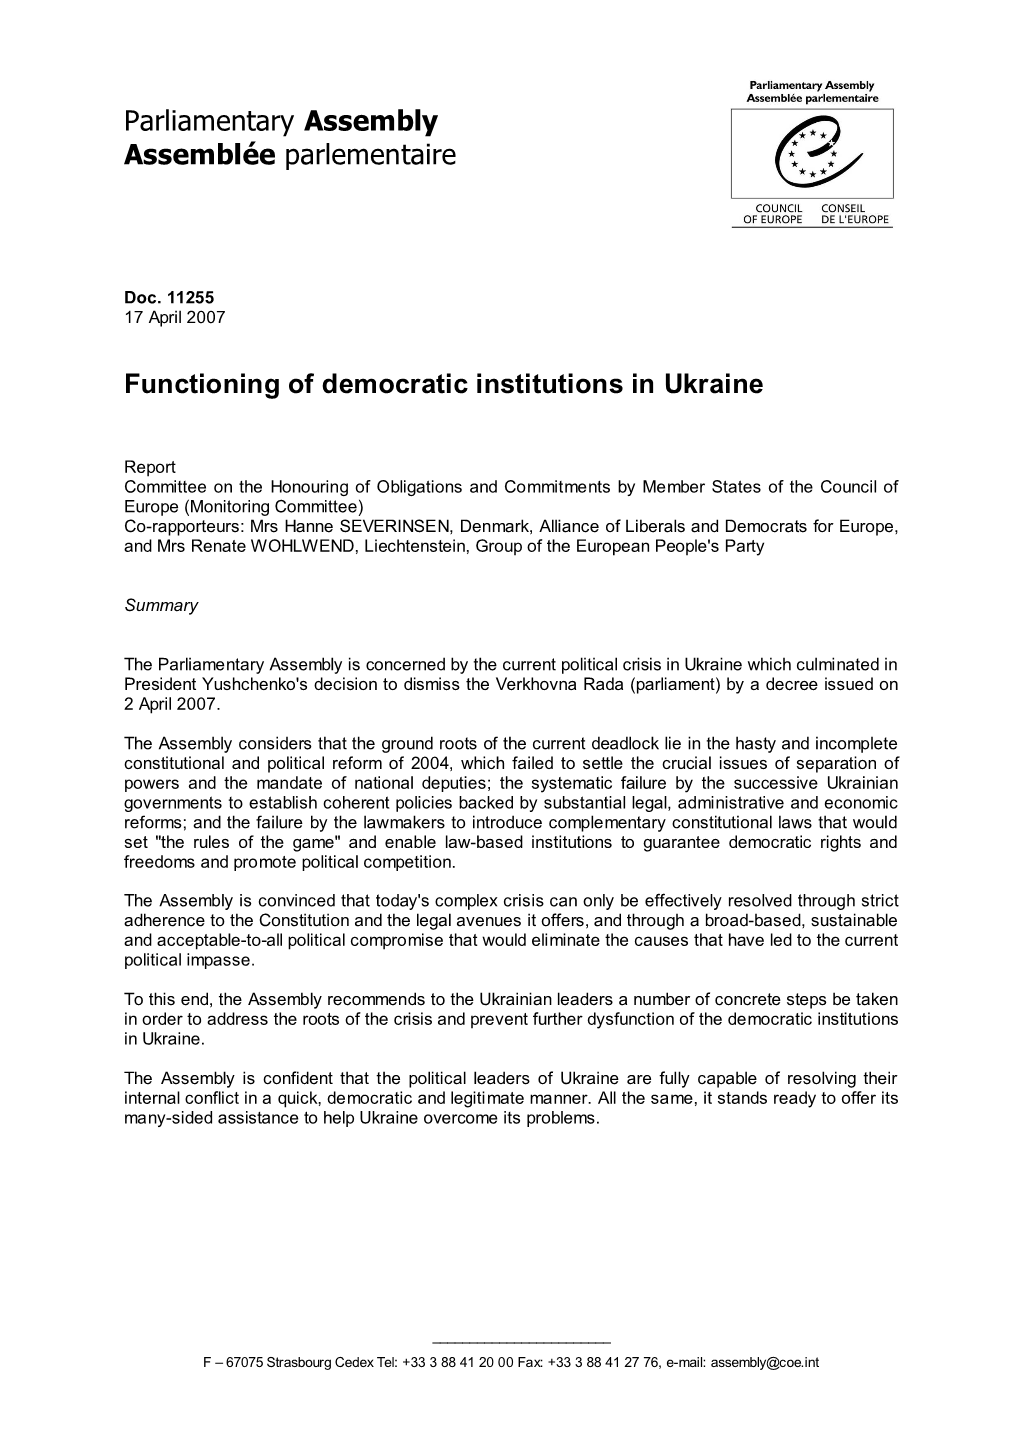 Functioning of Democratic Institutions in Ukraine